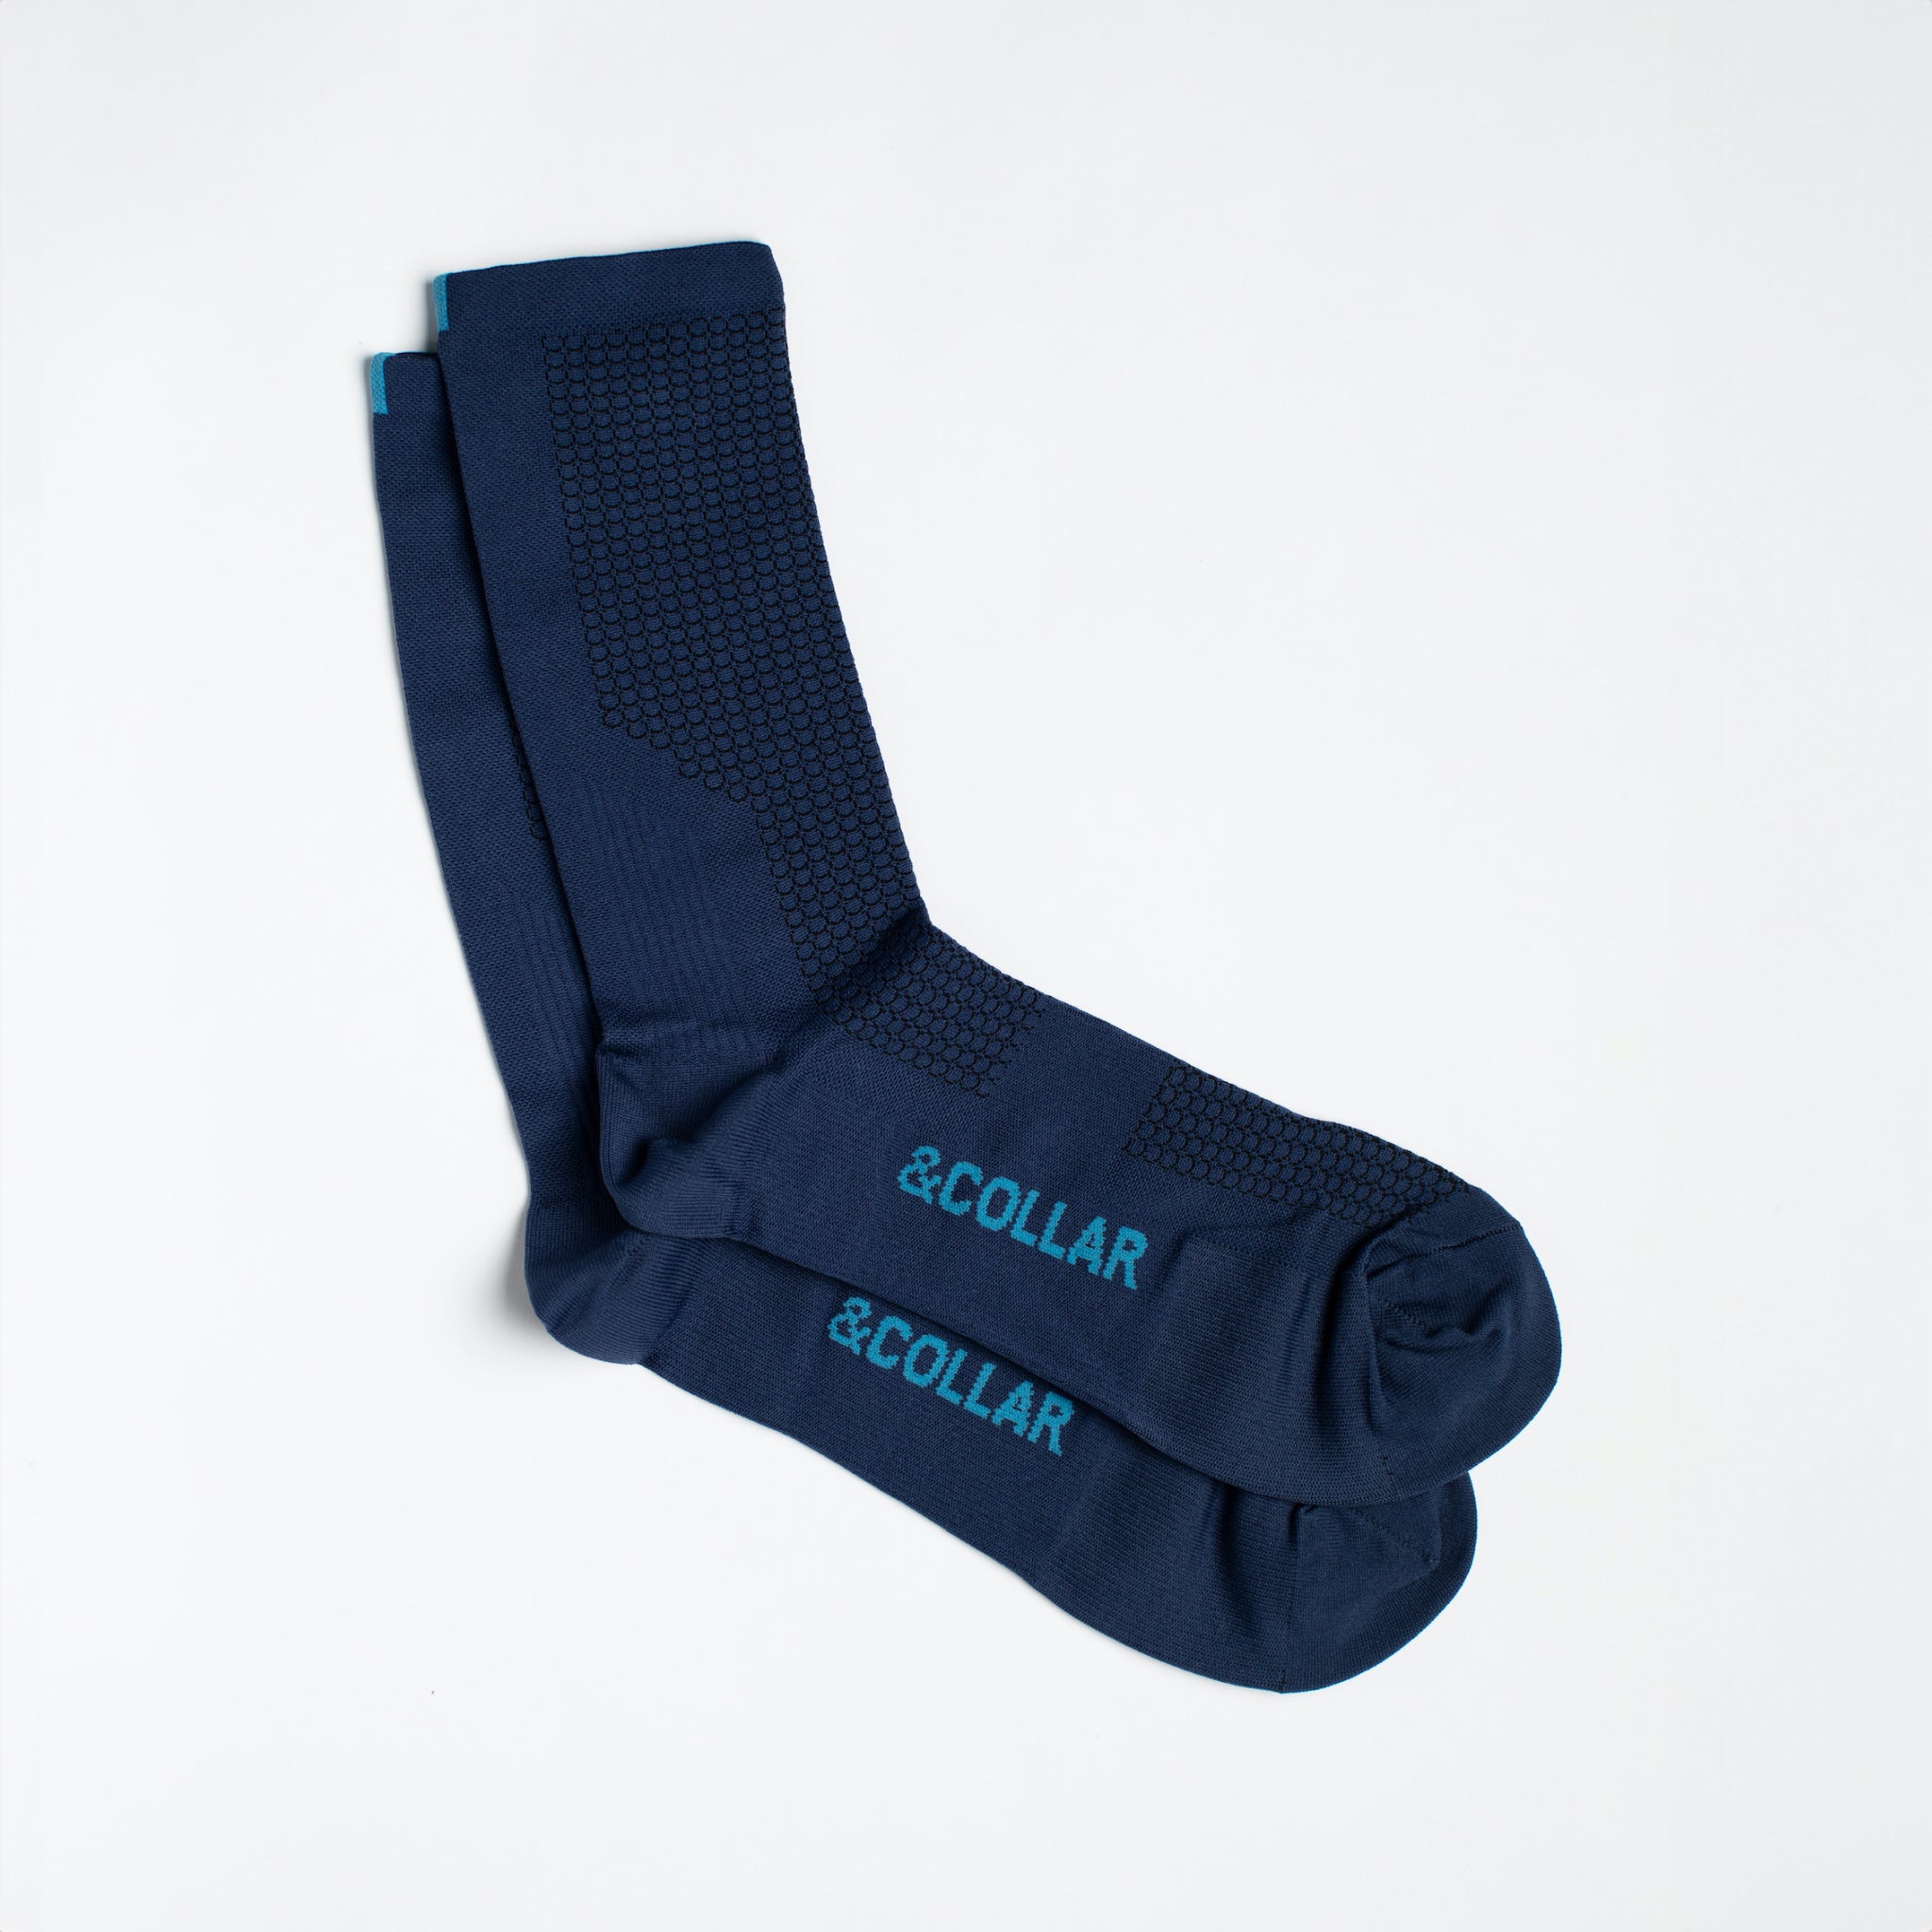 Summit Performance Dress Socks – &Collar